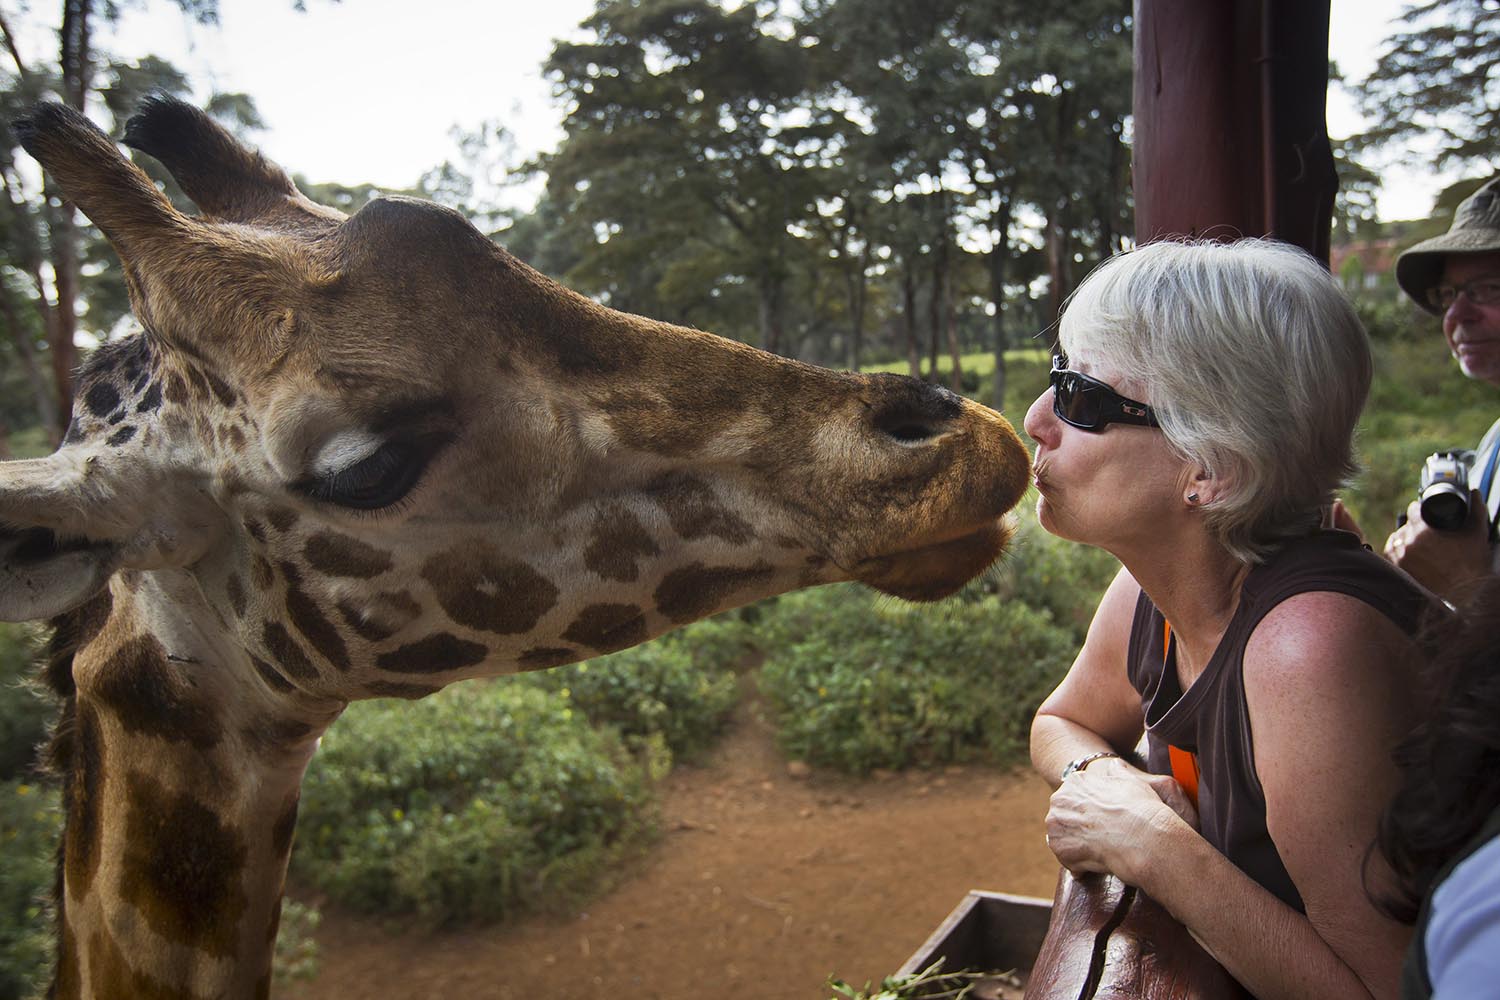 Especial Un mundo pequeño. Besando a una jirafa en el Centro de Jirafas de Nairobi, en Kenia